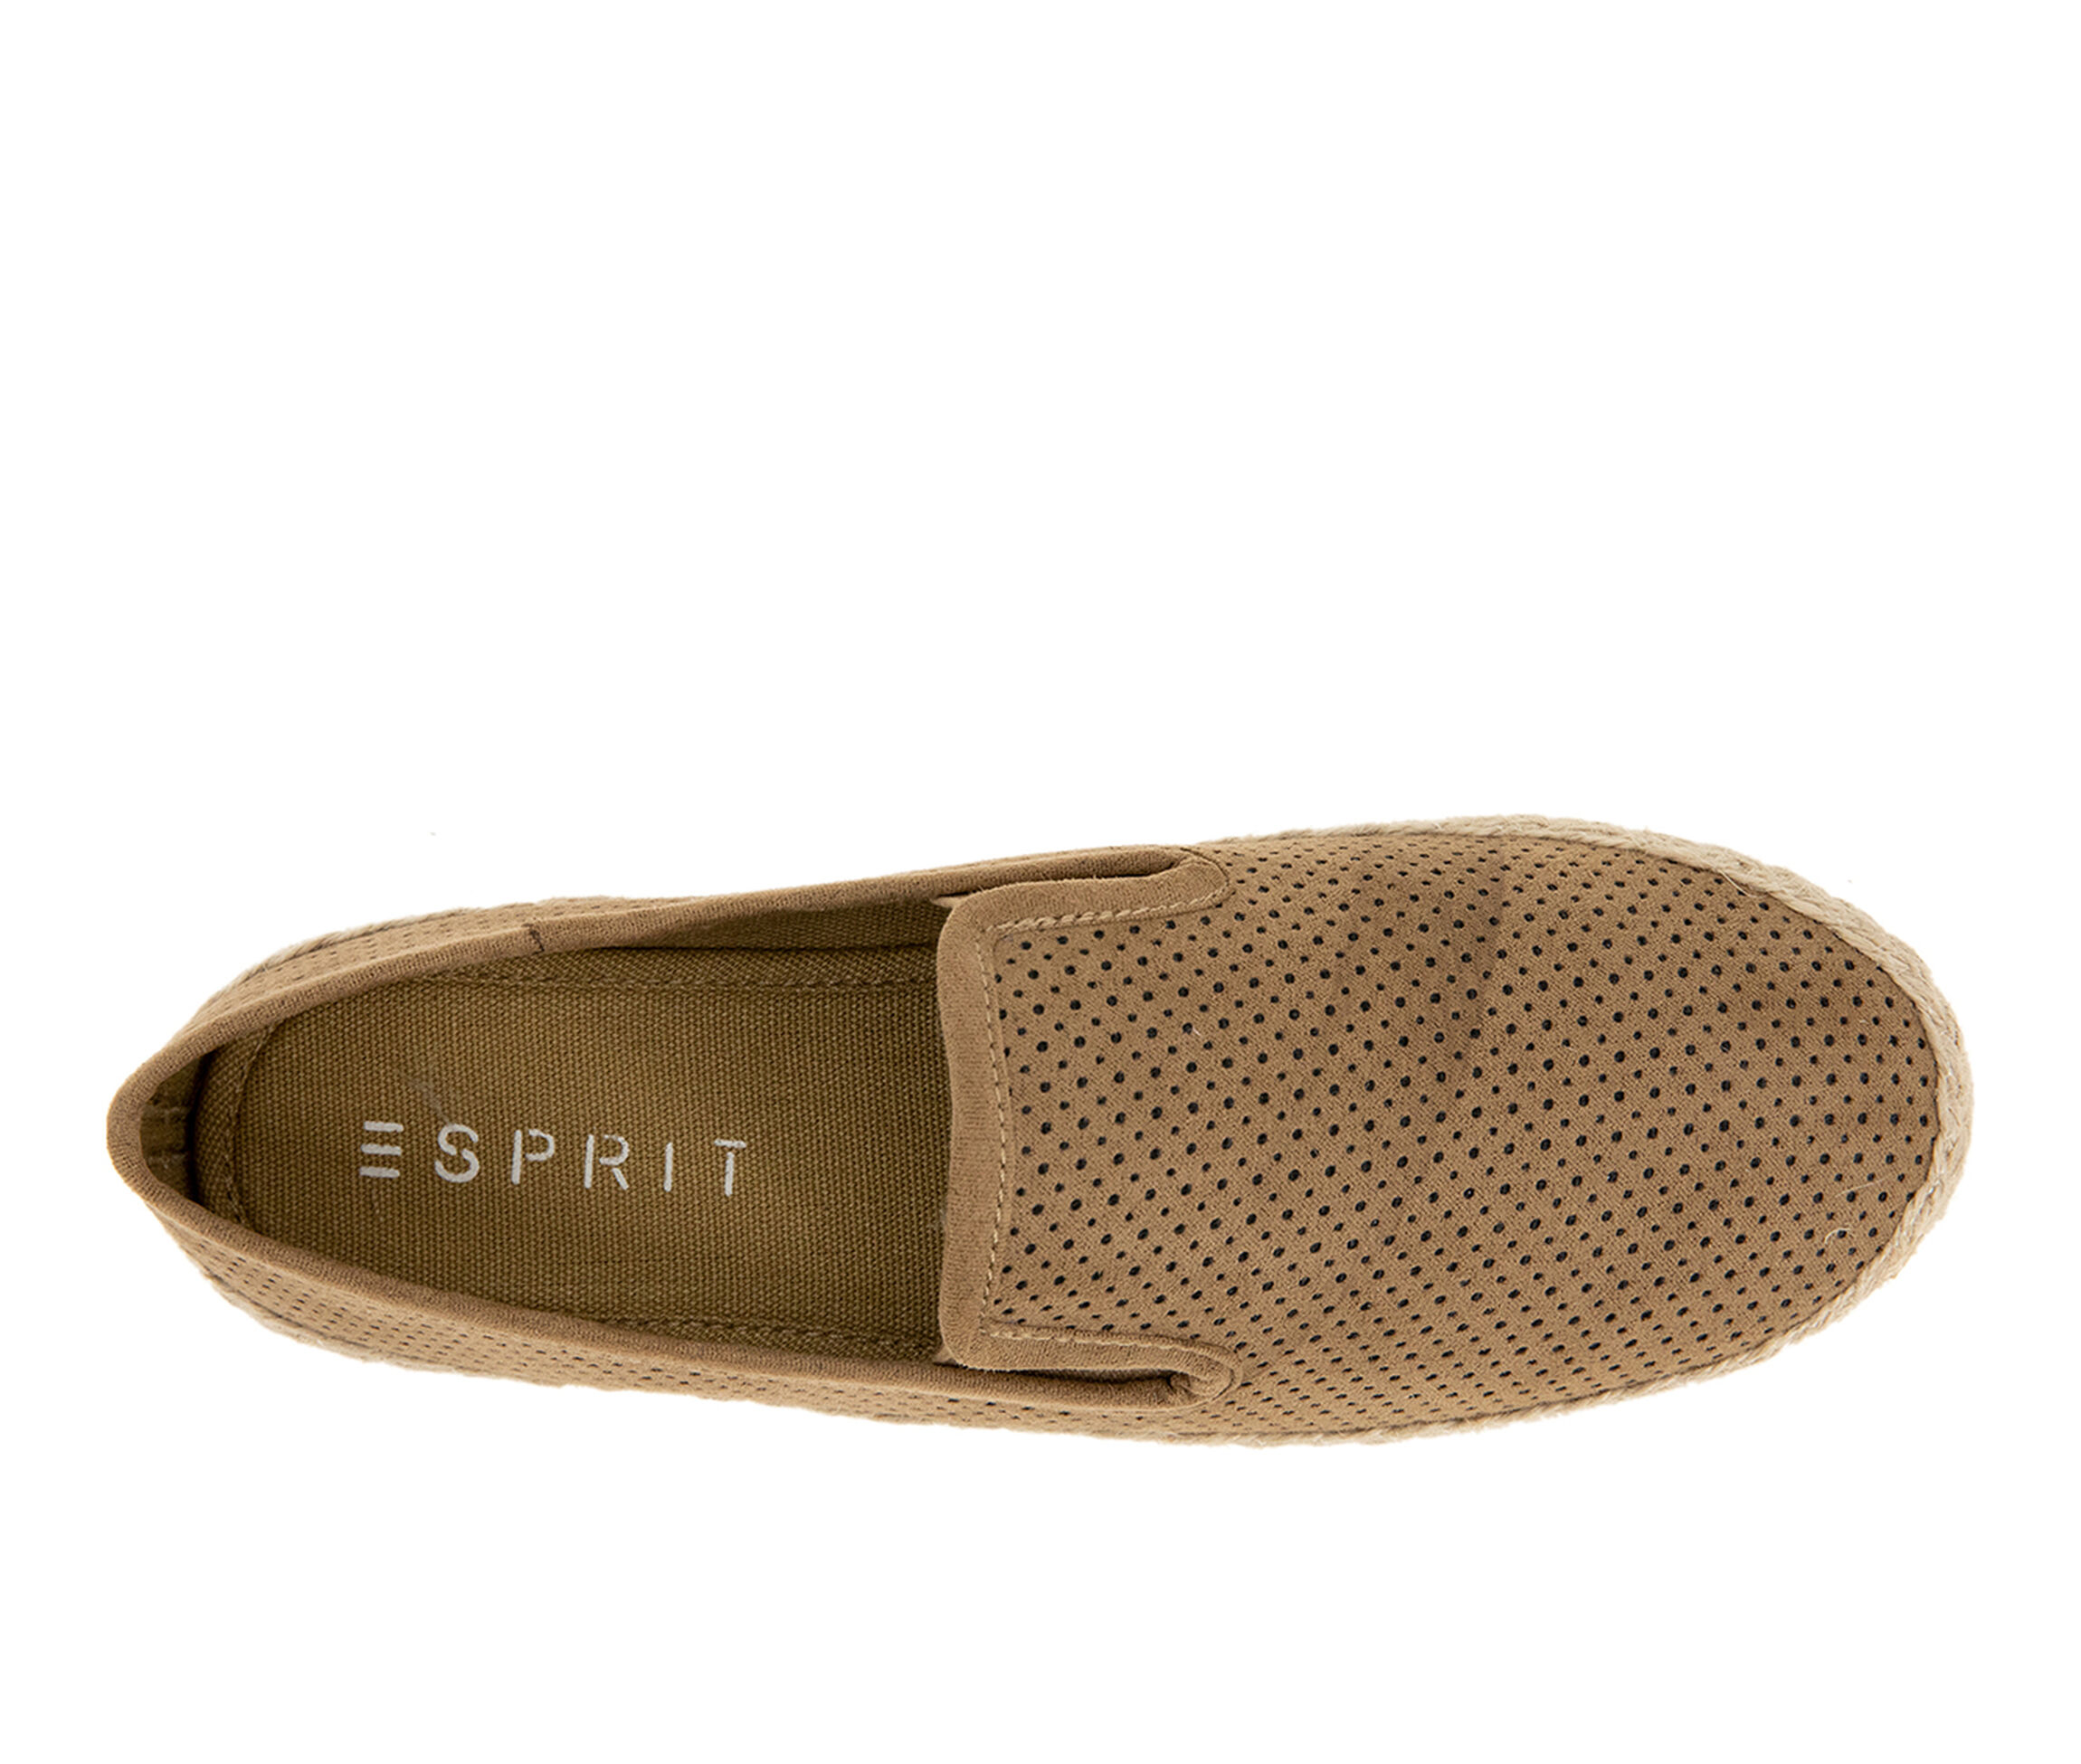 Esprit Shoes | Shoe Carnival